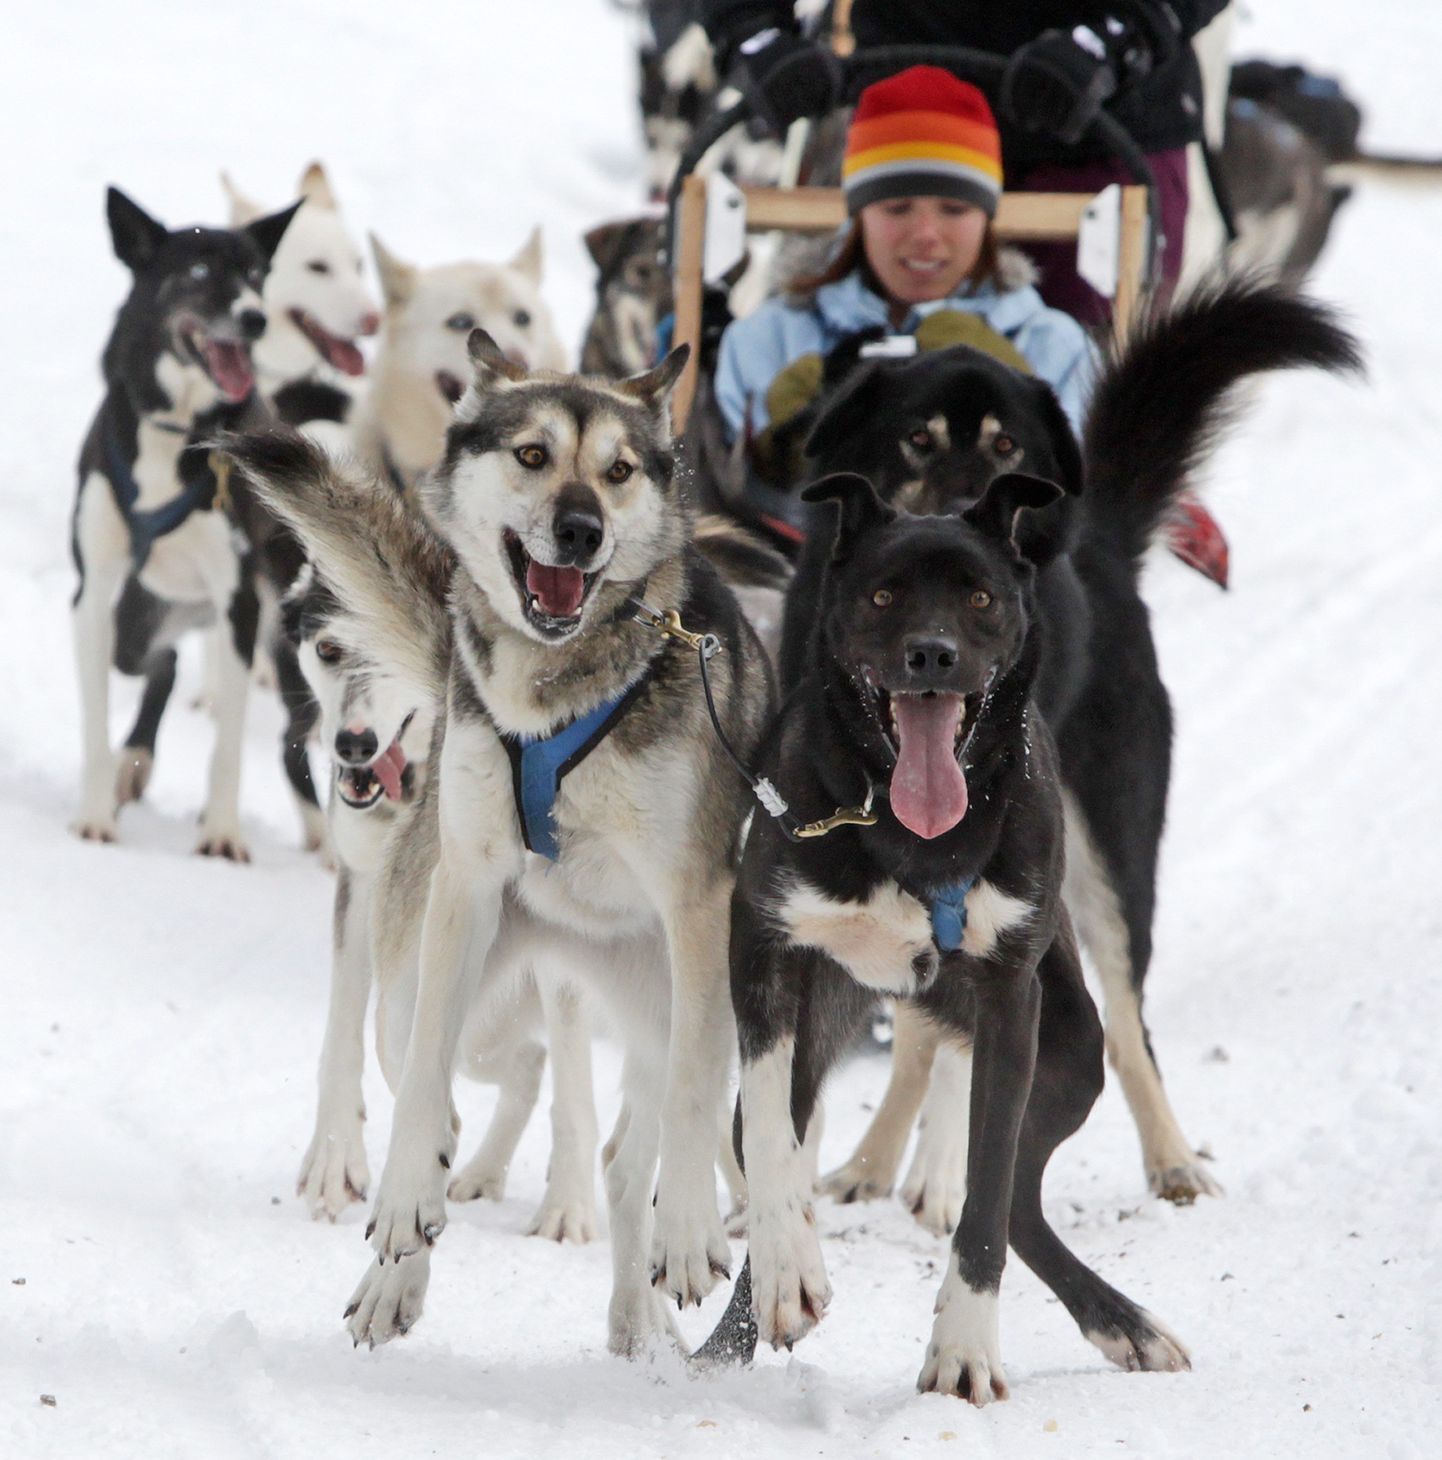 Поездки на собачьих упряжках - популярное развлечение для туристов в Канаде.